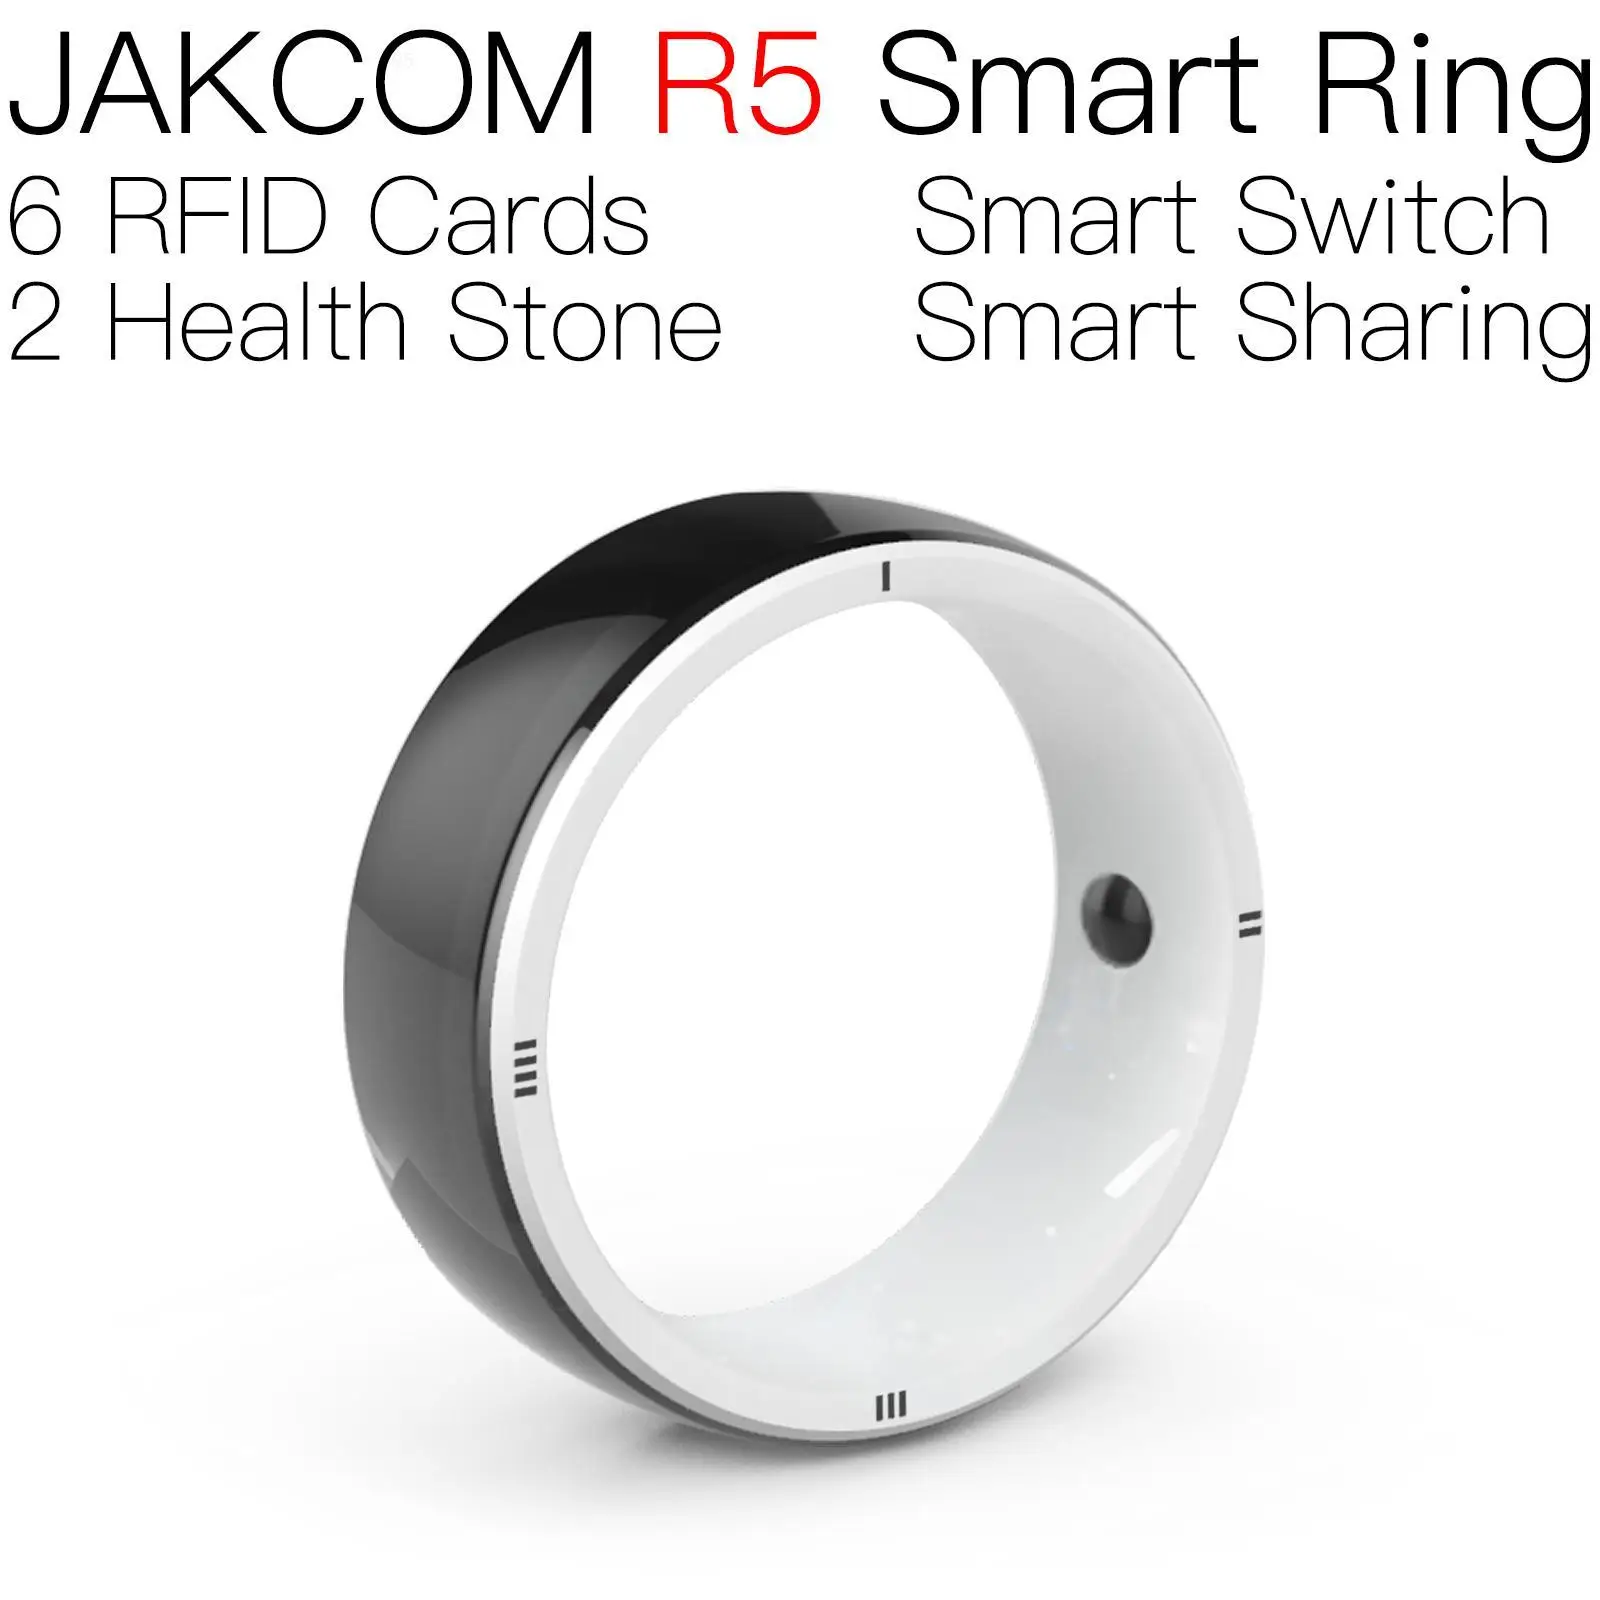 JAKCOM R5 Smart Ring соответствует нулевым меткам устройств nfc metalico 3d meter seal wire rfid-метки 125 кГц конфигурация бирки для белья дверь